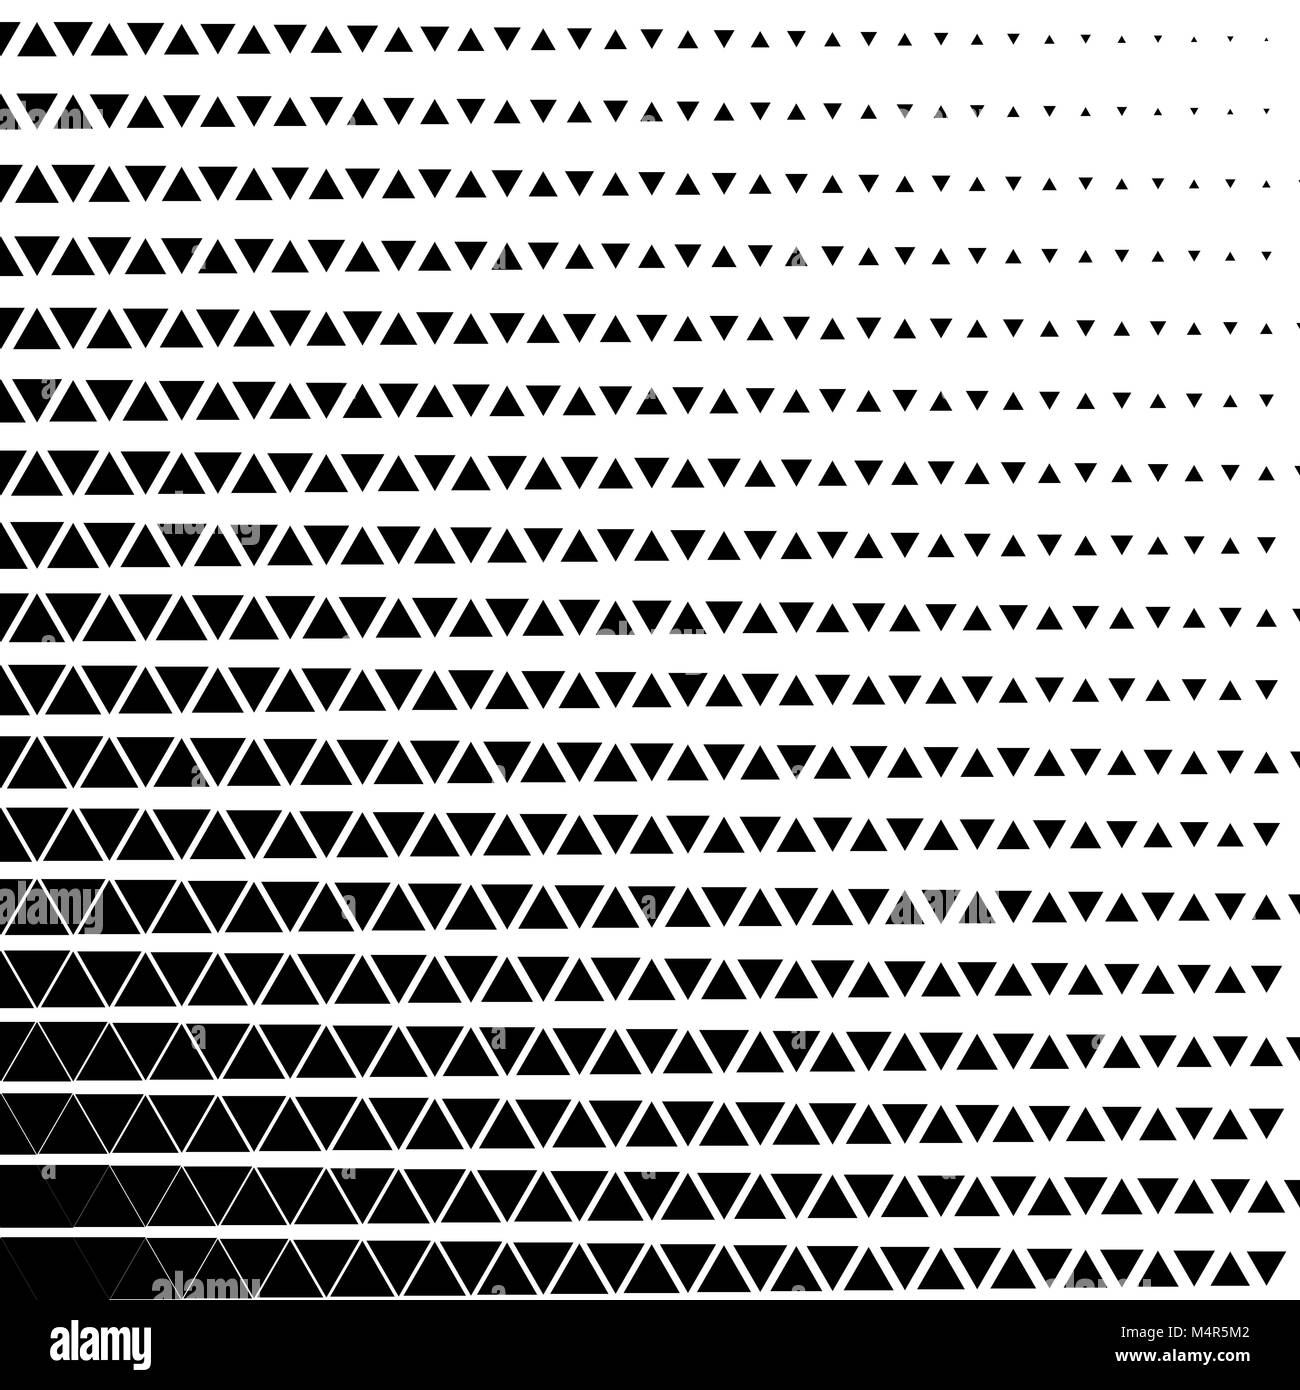 Impression demi teinte Banque d'images noir et blanc - Alamy